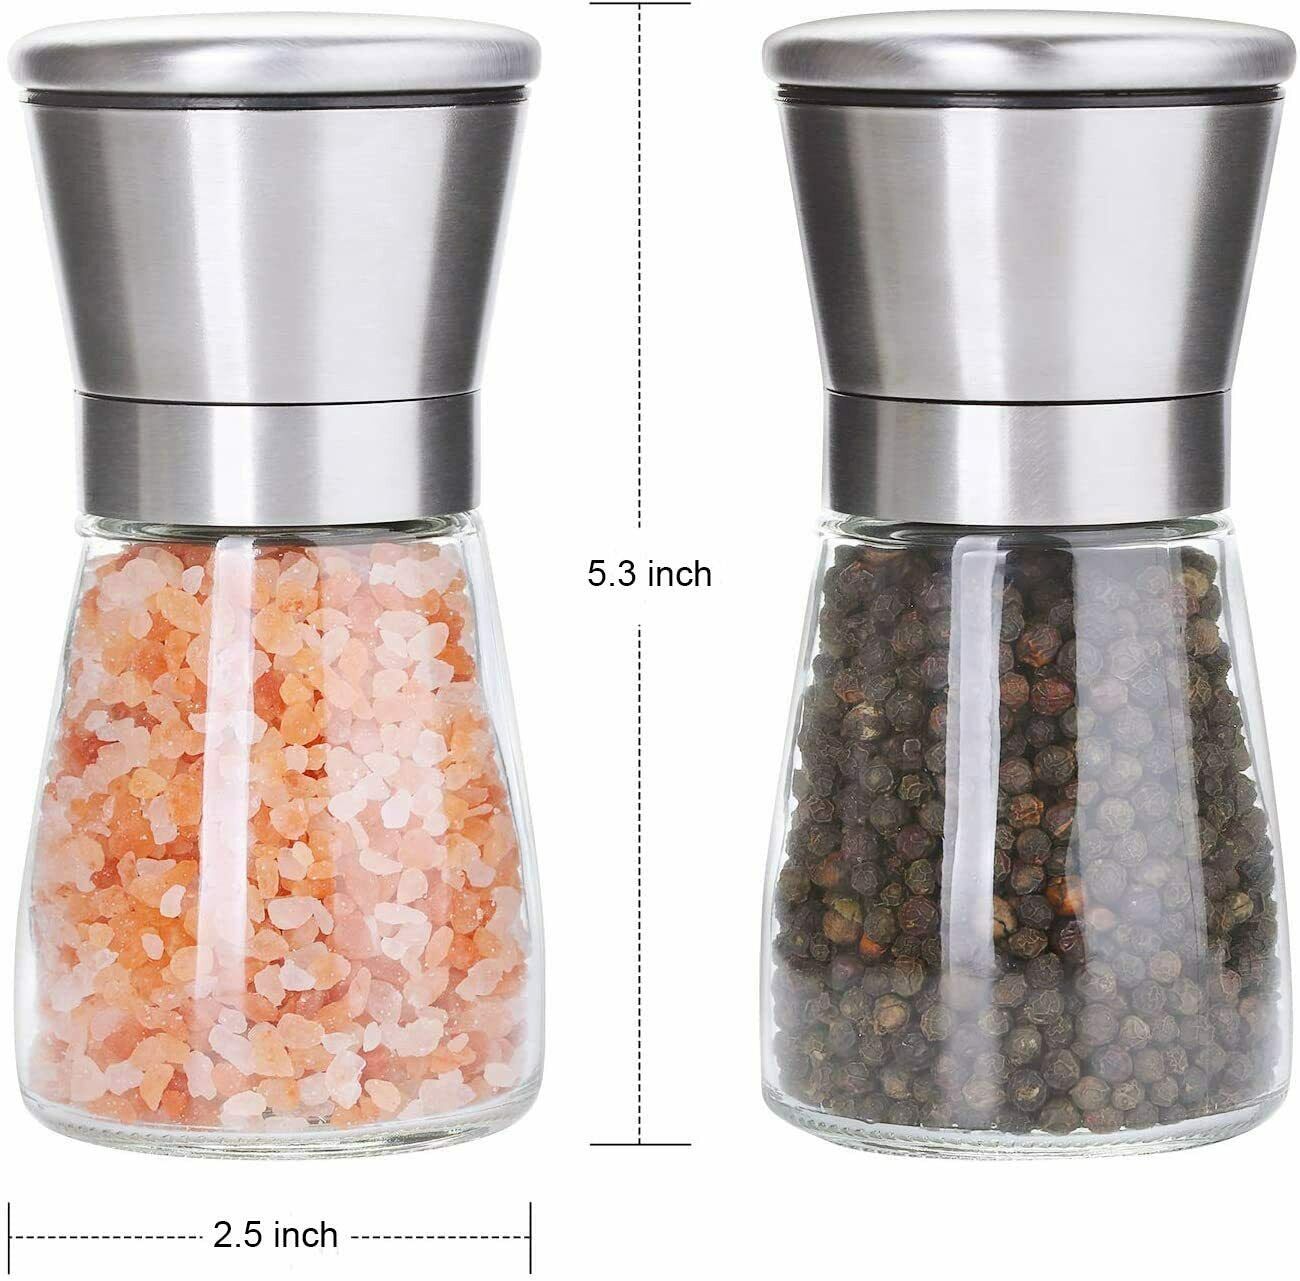 Salt And Pepper Grinder Set With Adjustable Ceramics Grinder Stainless Steel